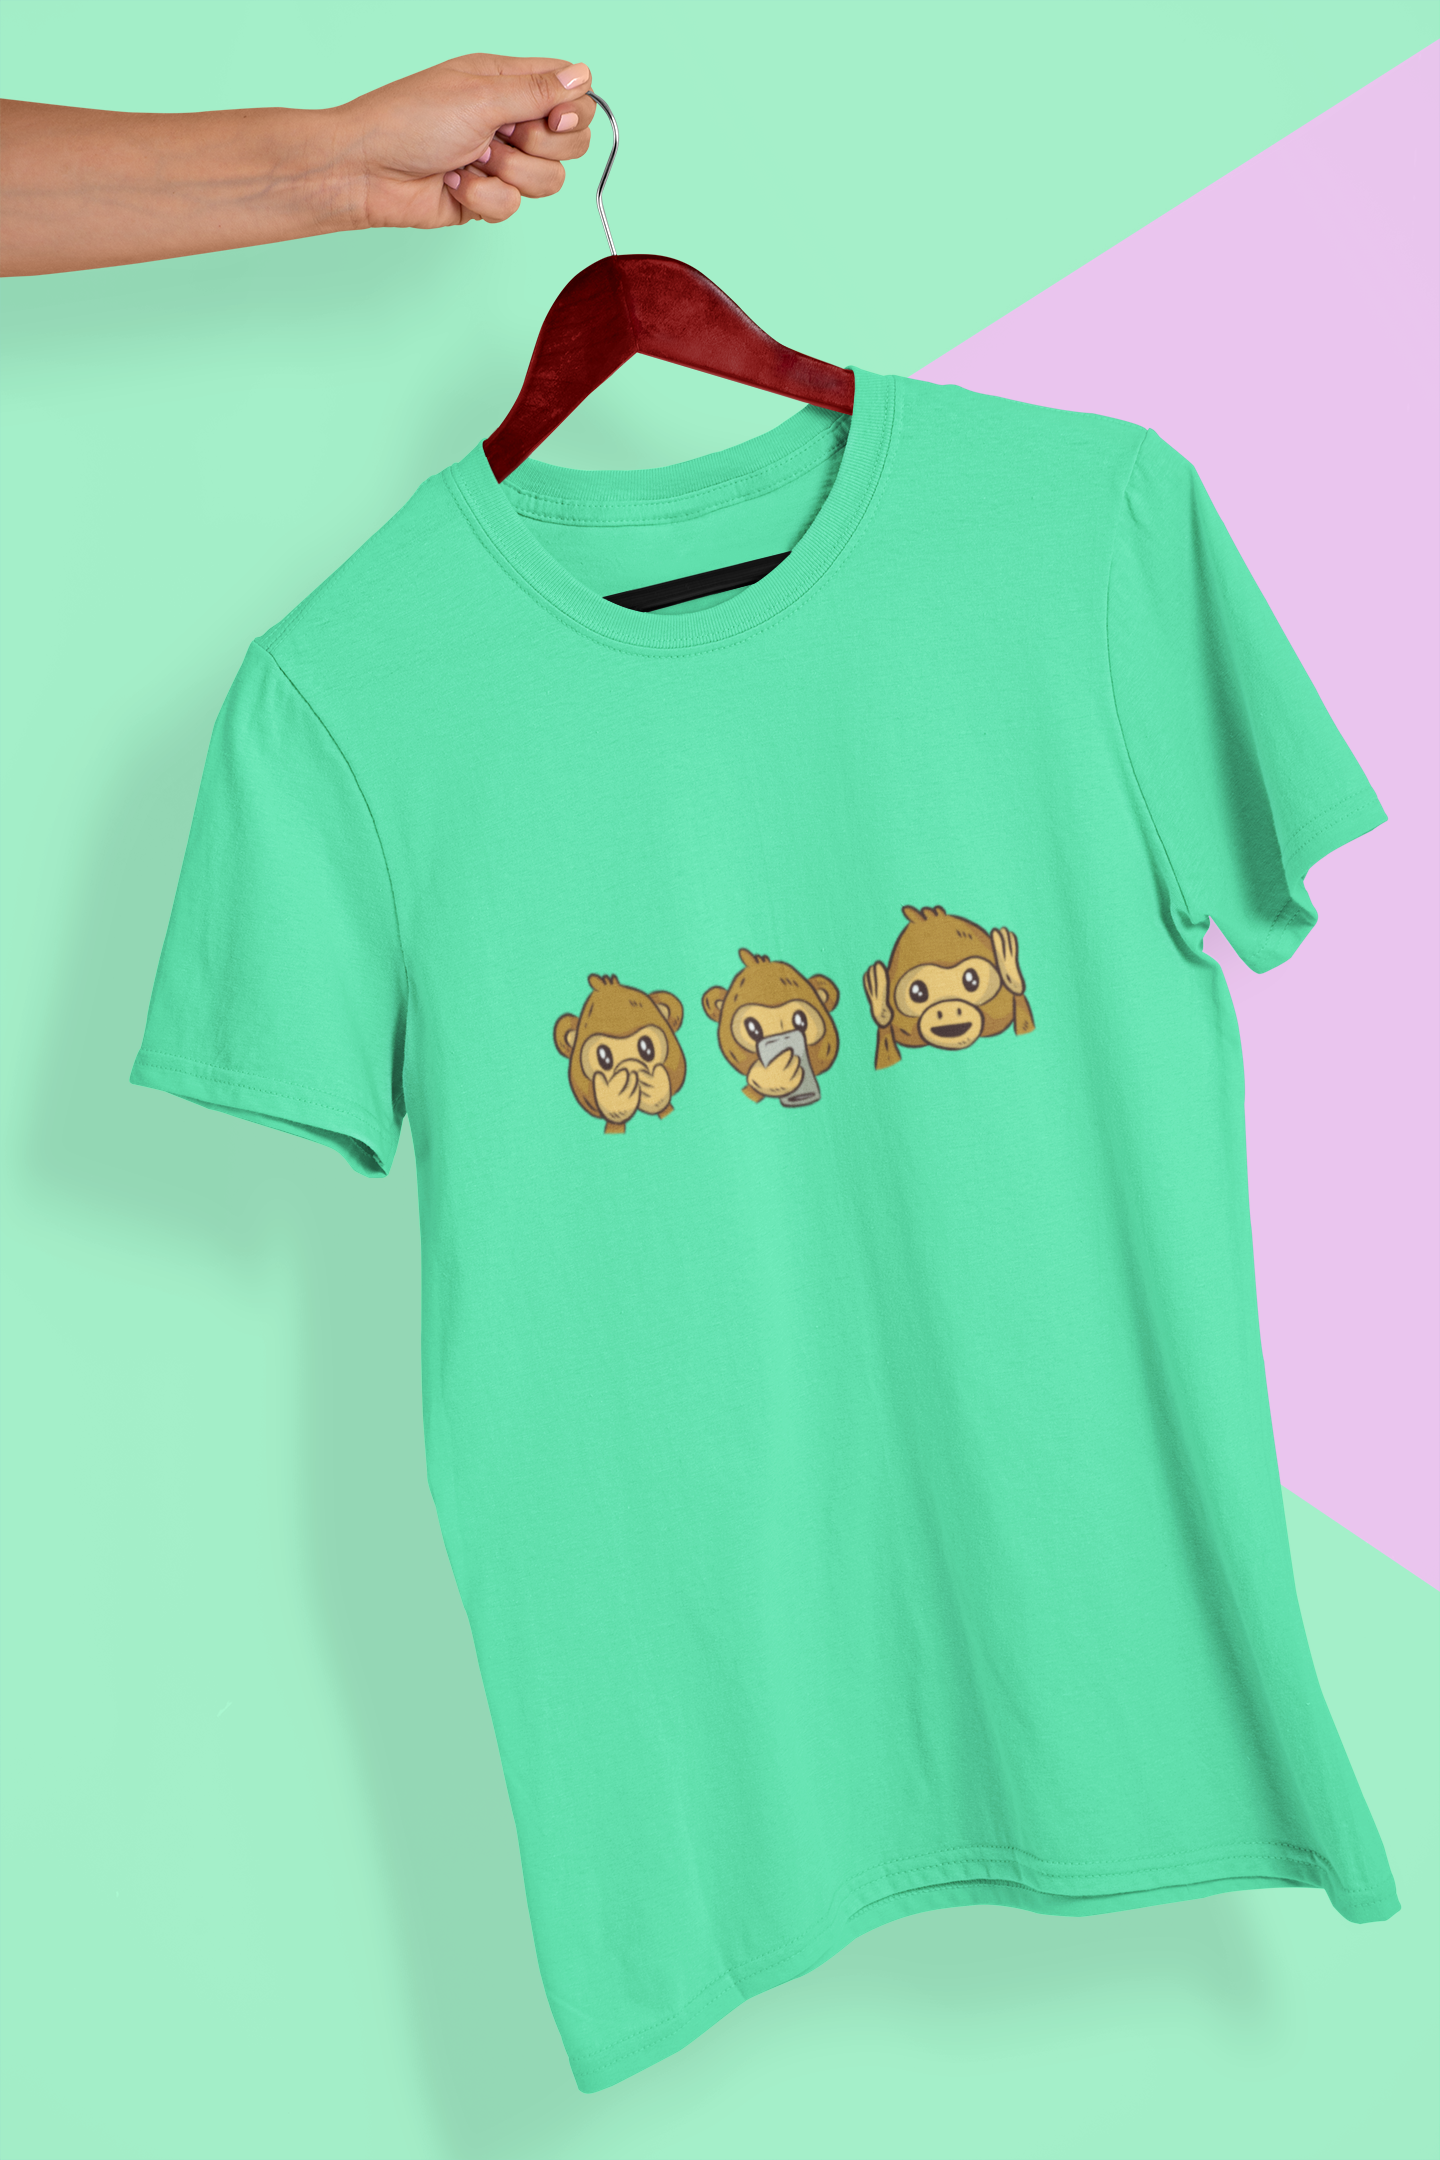 Monkey Emojis Mens Half Sleeves T-shirt- FunkyTeesClub